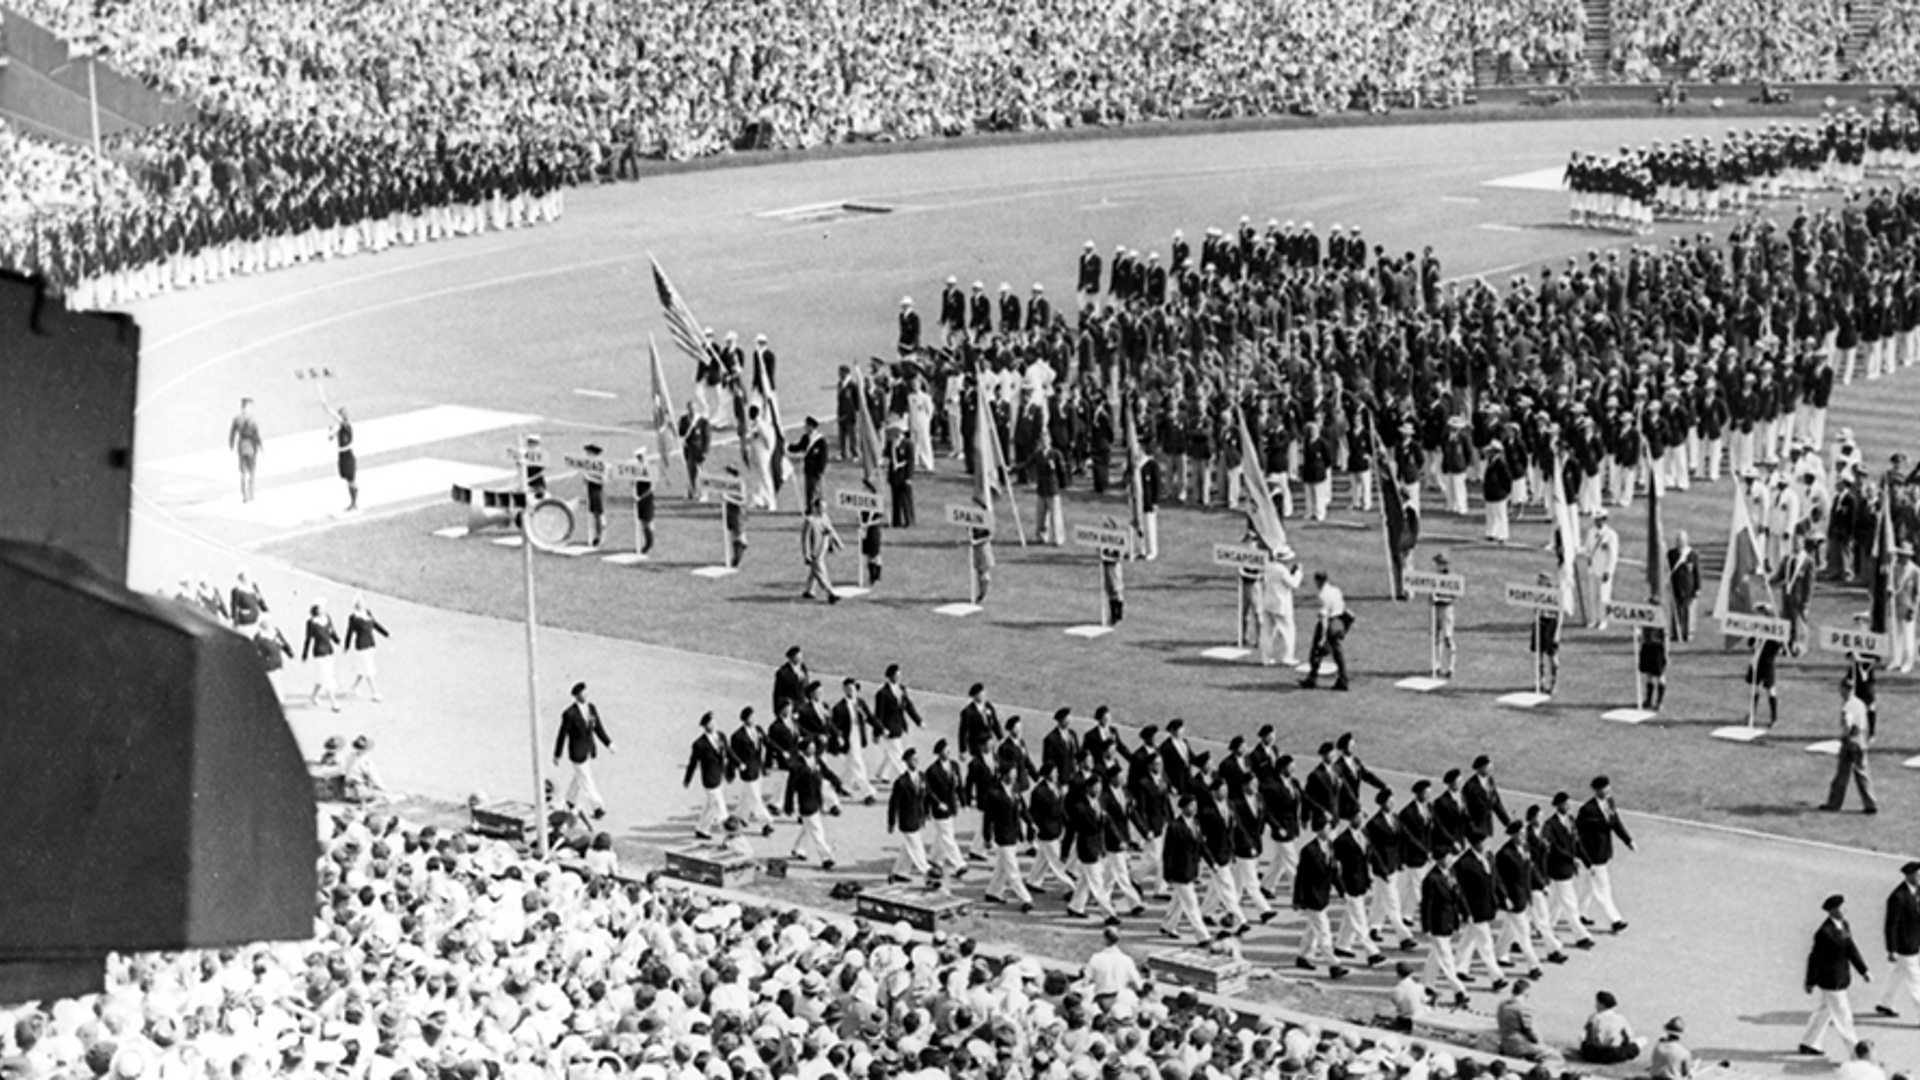 1948 London Olympics - History of the BBC